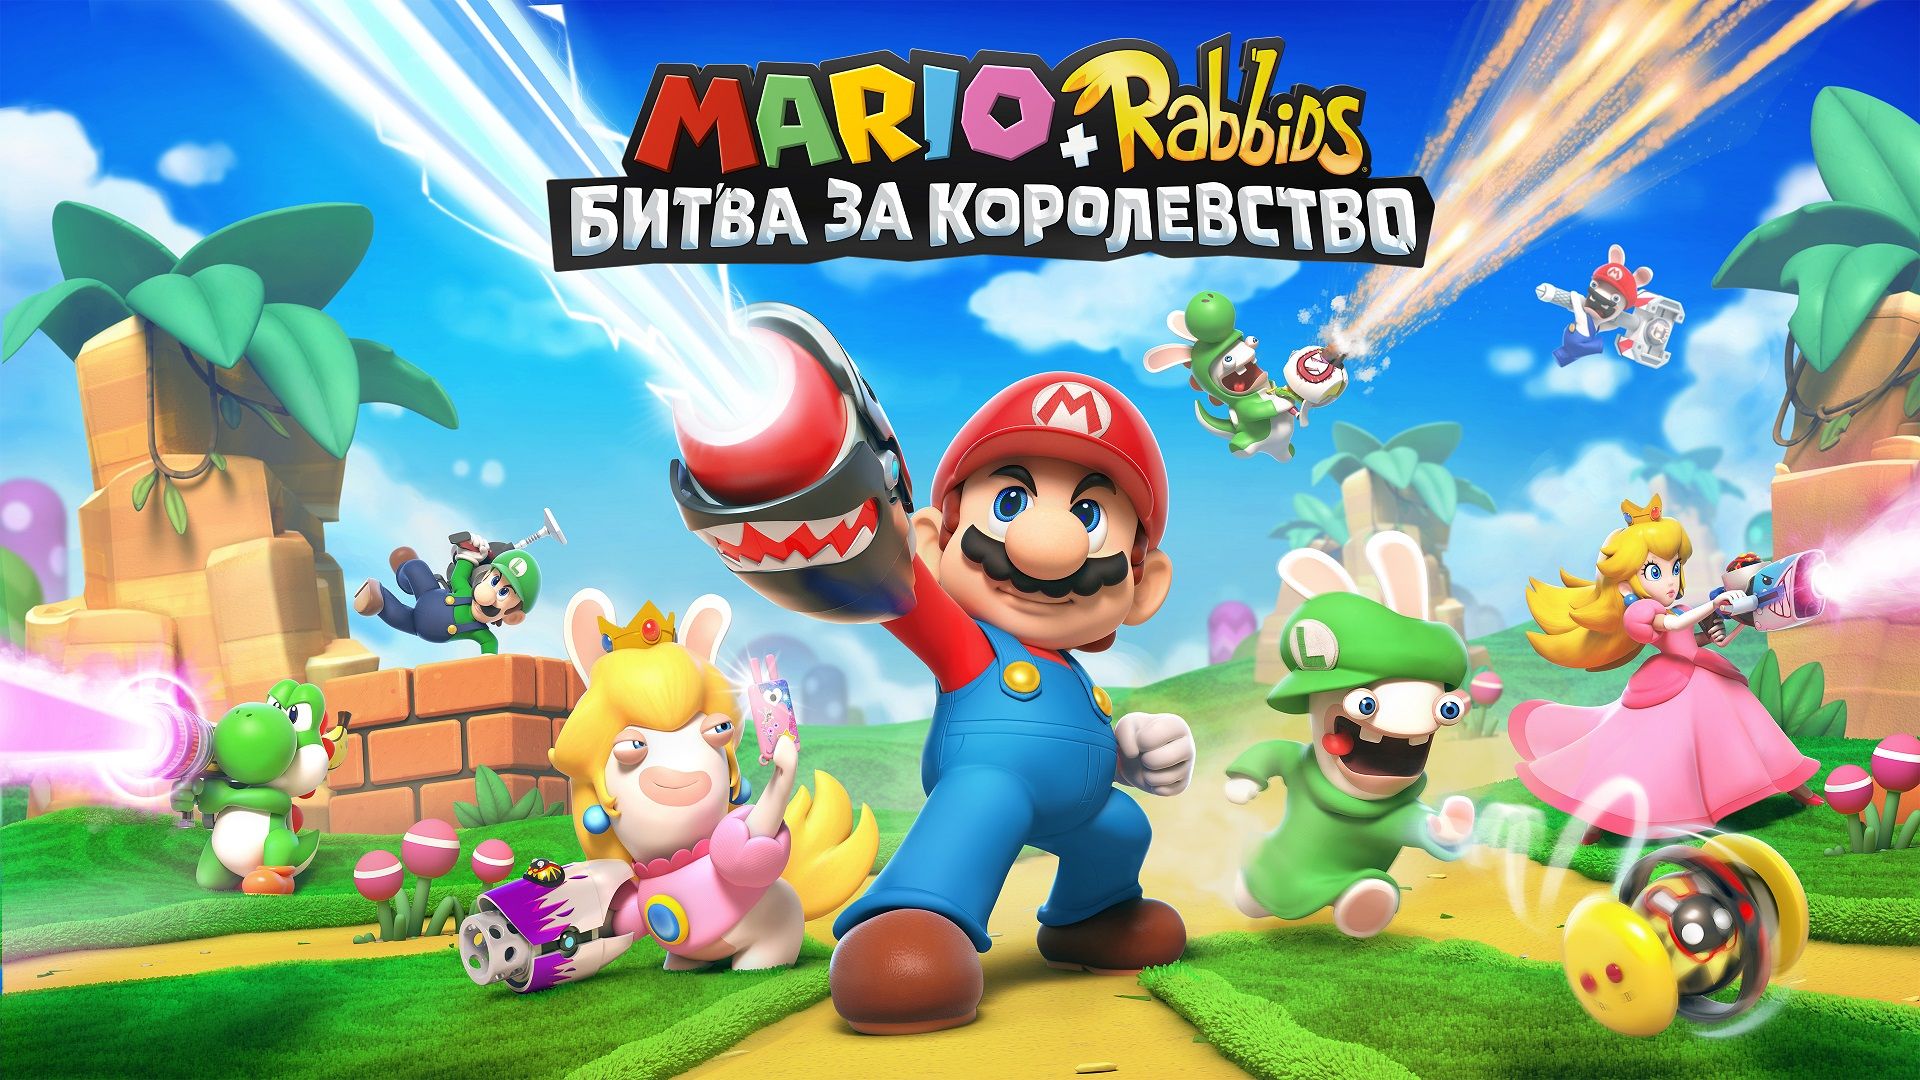 Mario + Rabbids: Битва за Королевство, постер № 2